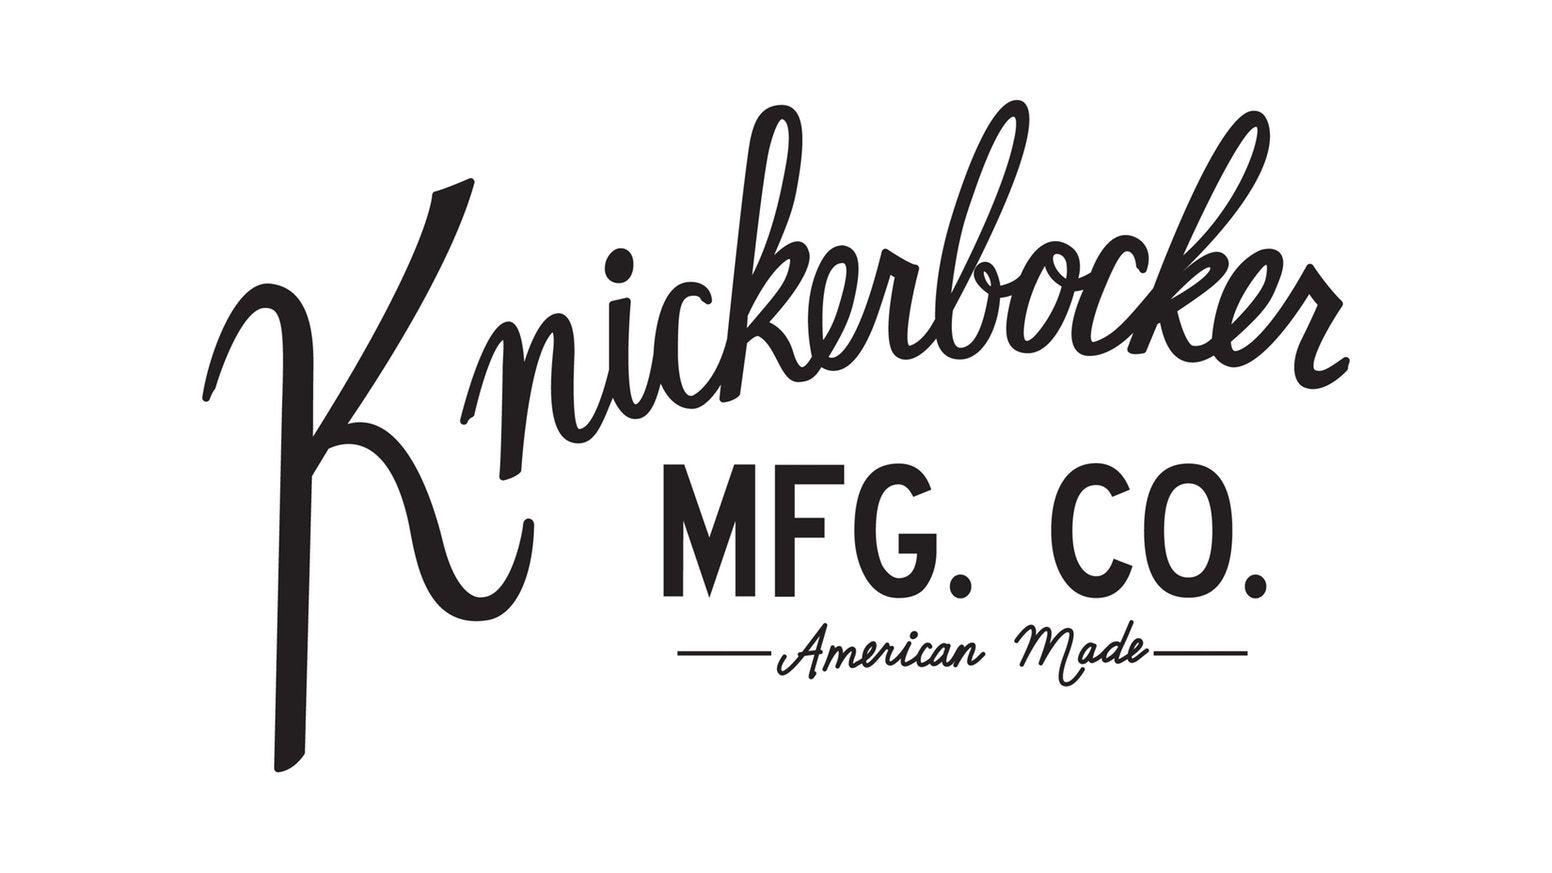 Knickerbocker Logo - Knickerbocker: A True Union. by Knickerbocker Mfg. Co